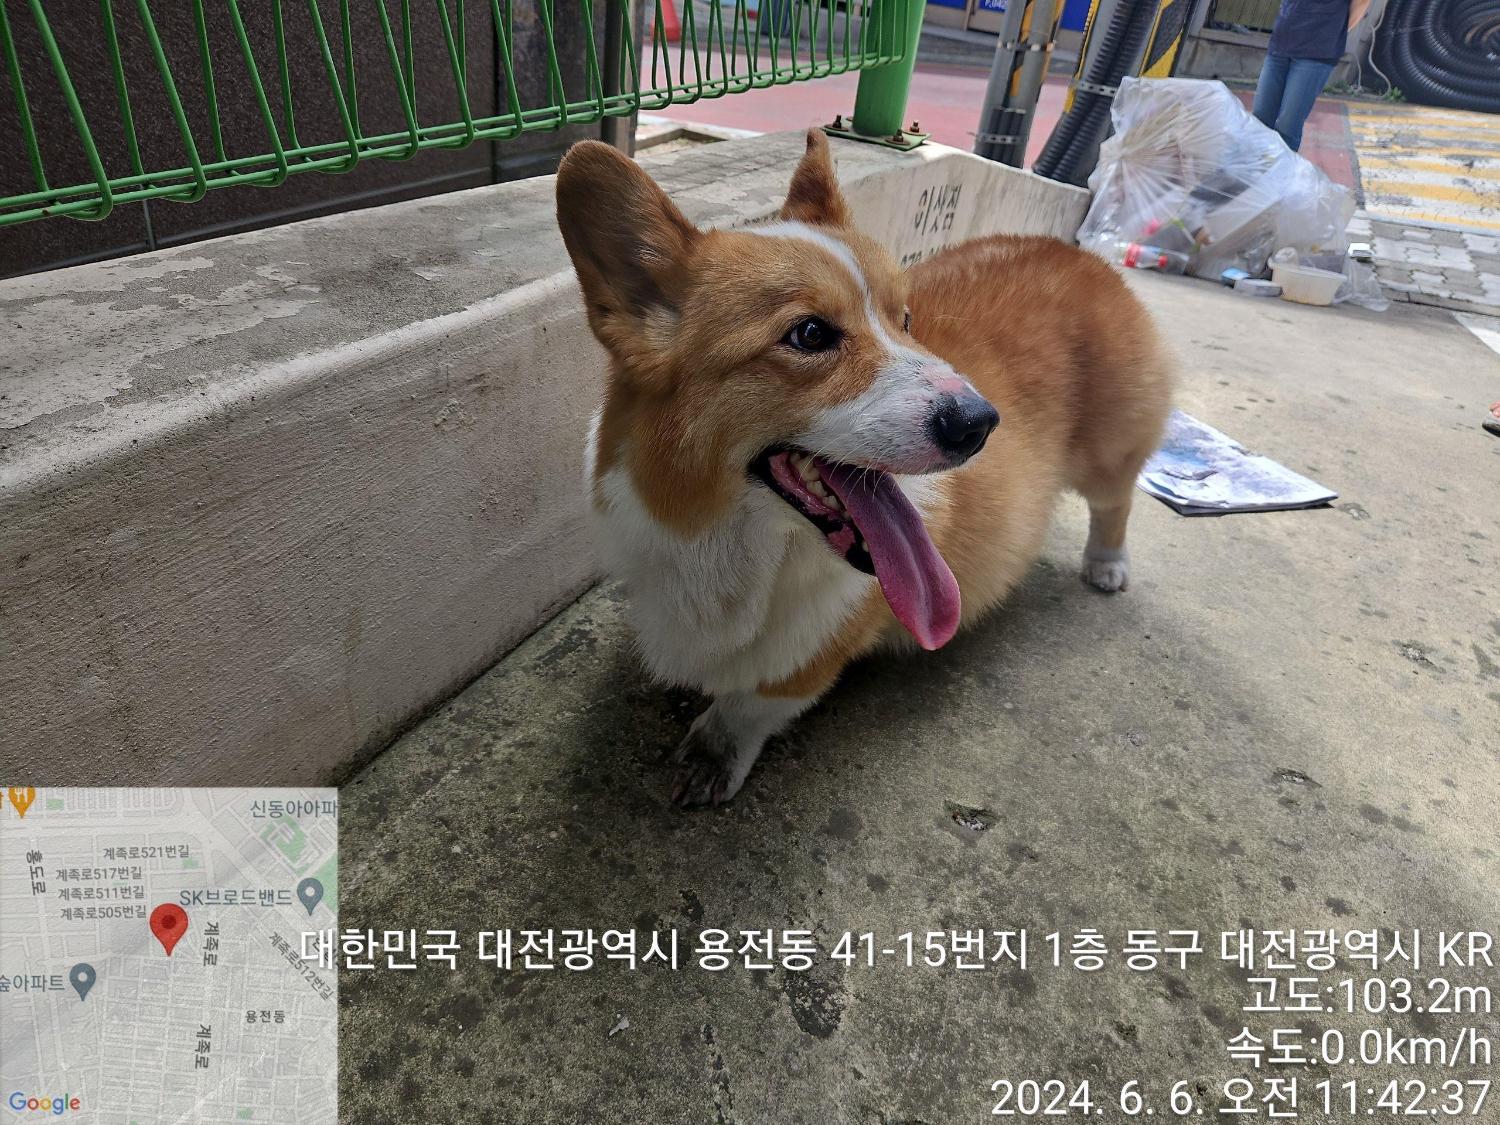 공고 번호가 대전-동구-2024-00157인 웰시 코기 카디건 동물 사진  